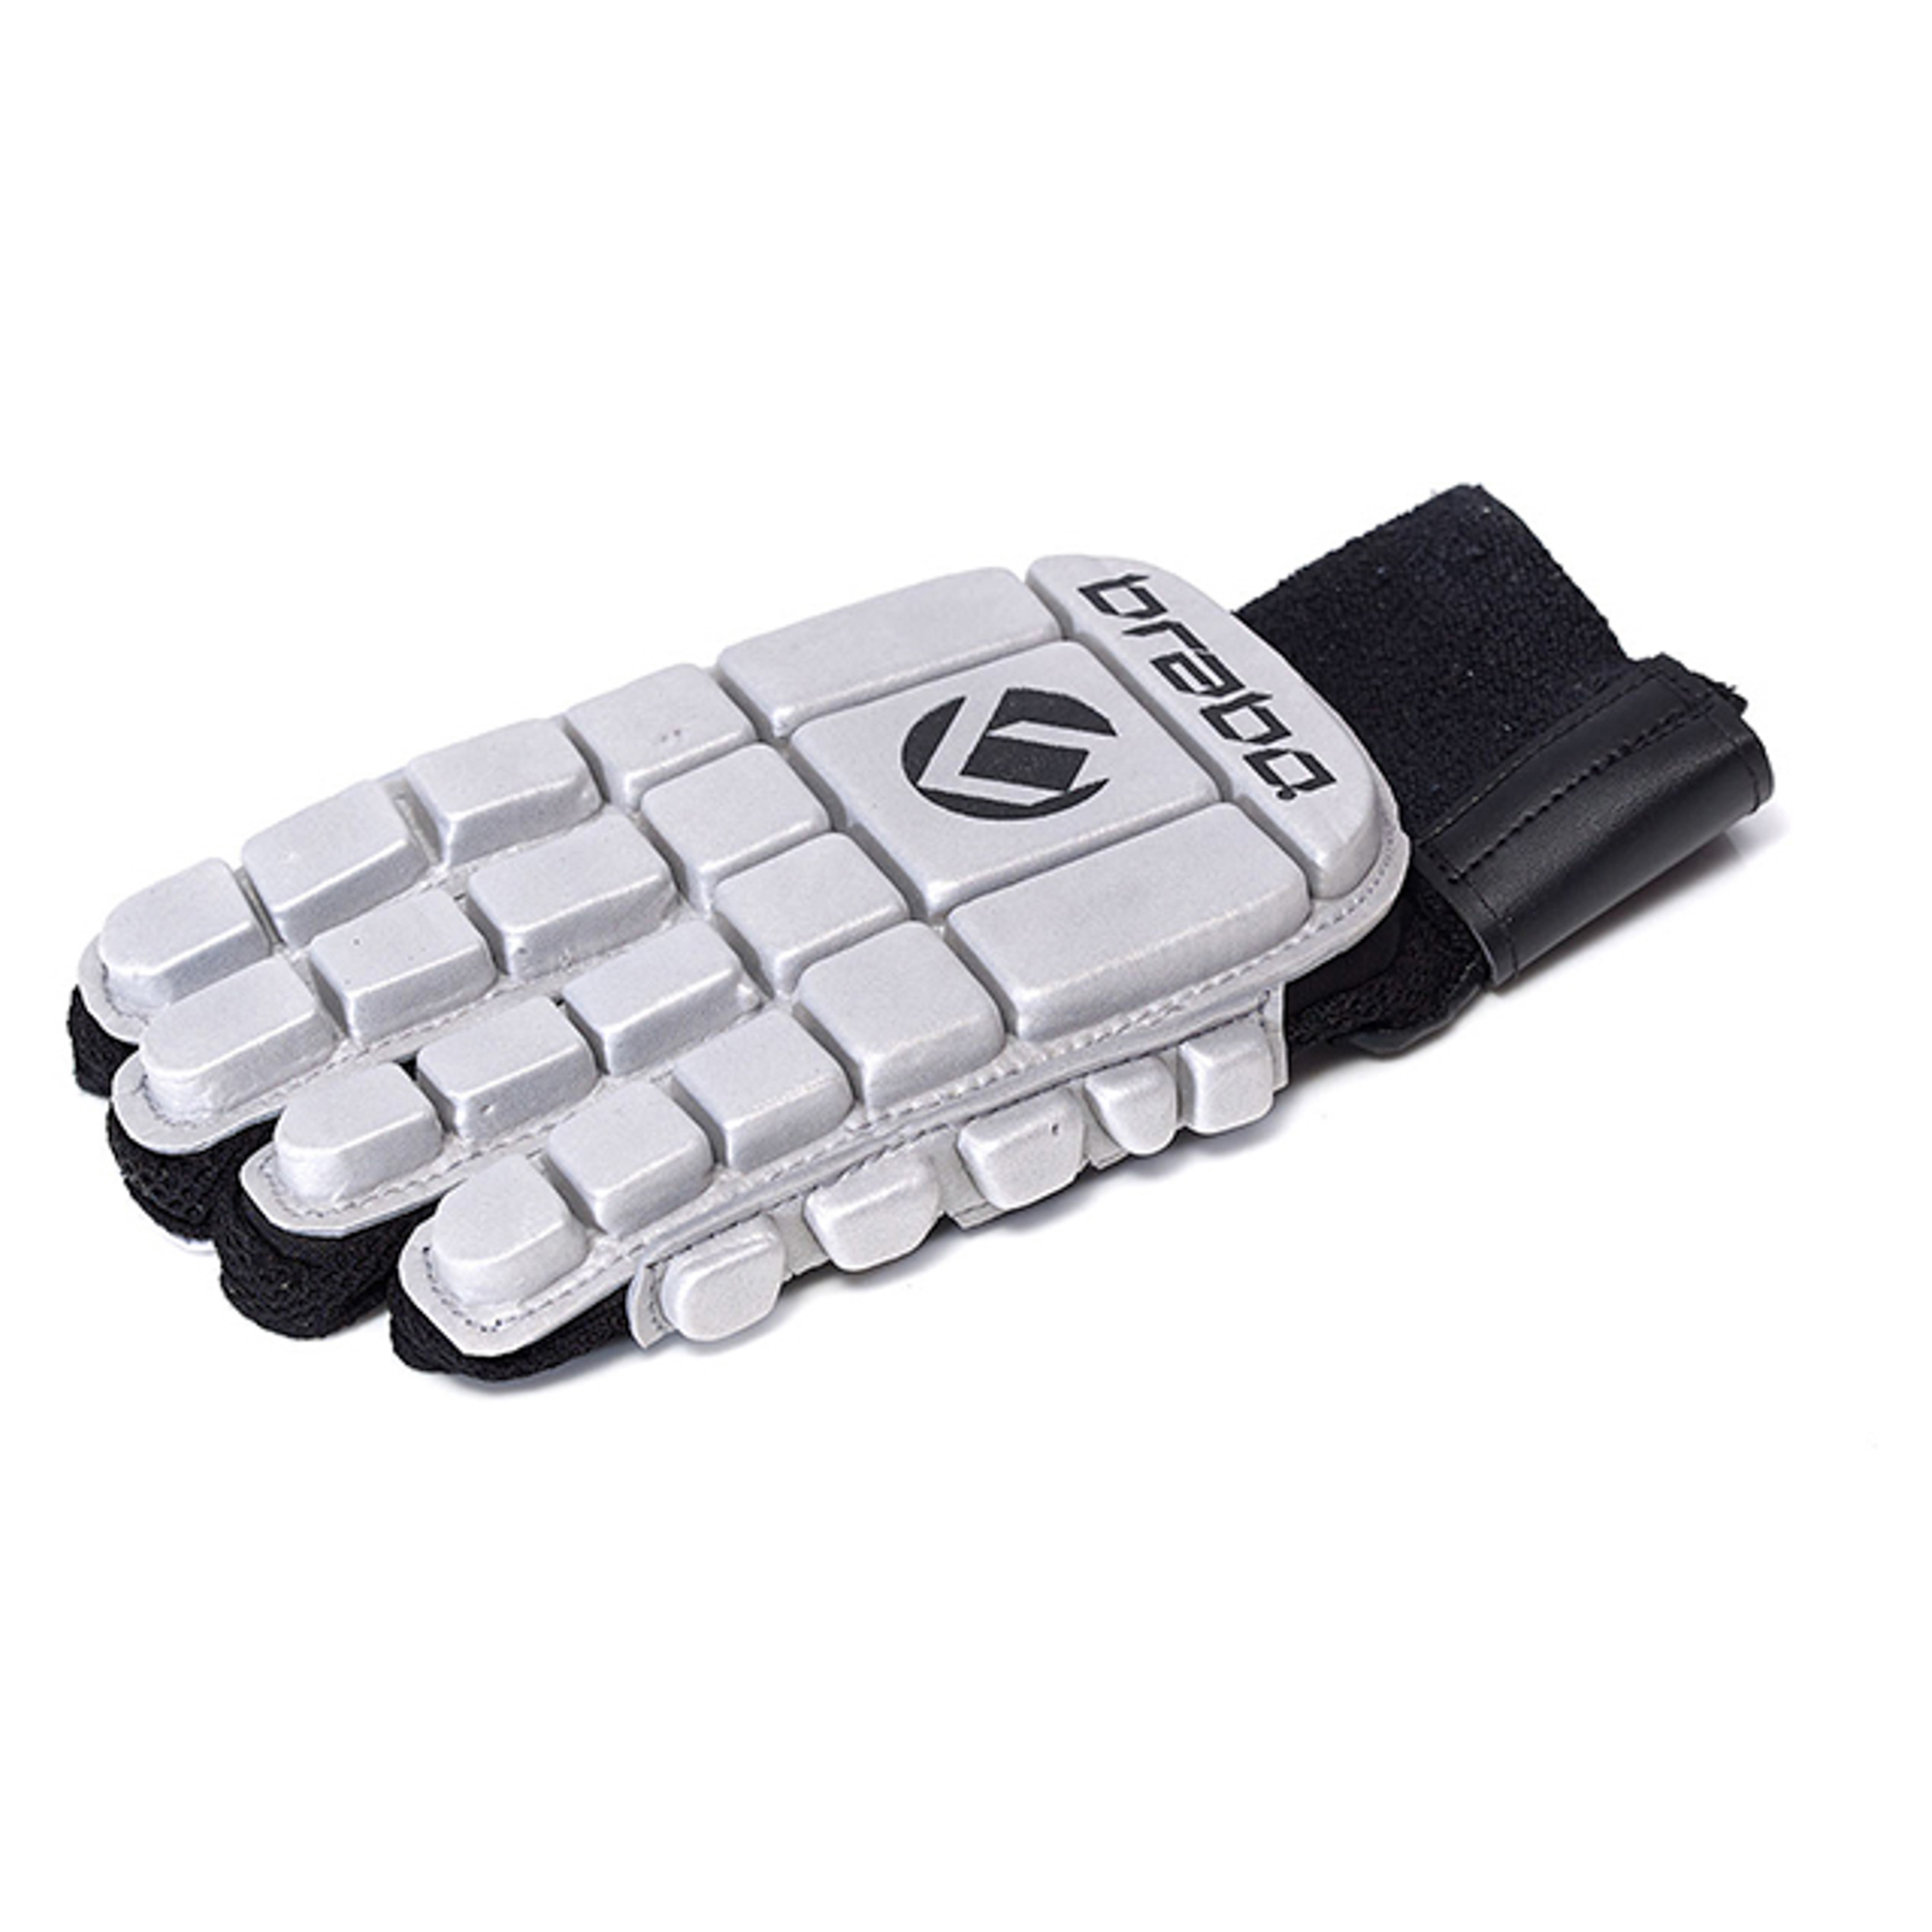 317.01064.030 - F3 Full Finger Foam Left Hand - Brabo Gloves - Brabo Accessories - Brabo Hockey - Produkte | Sports